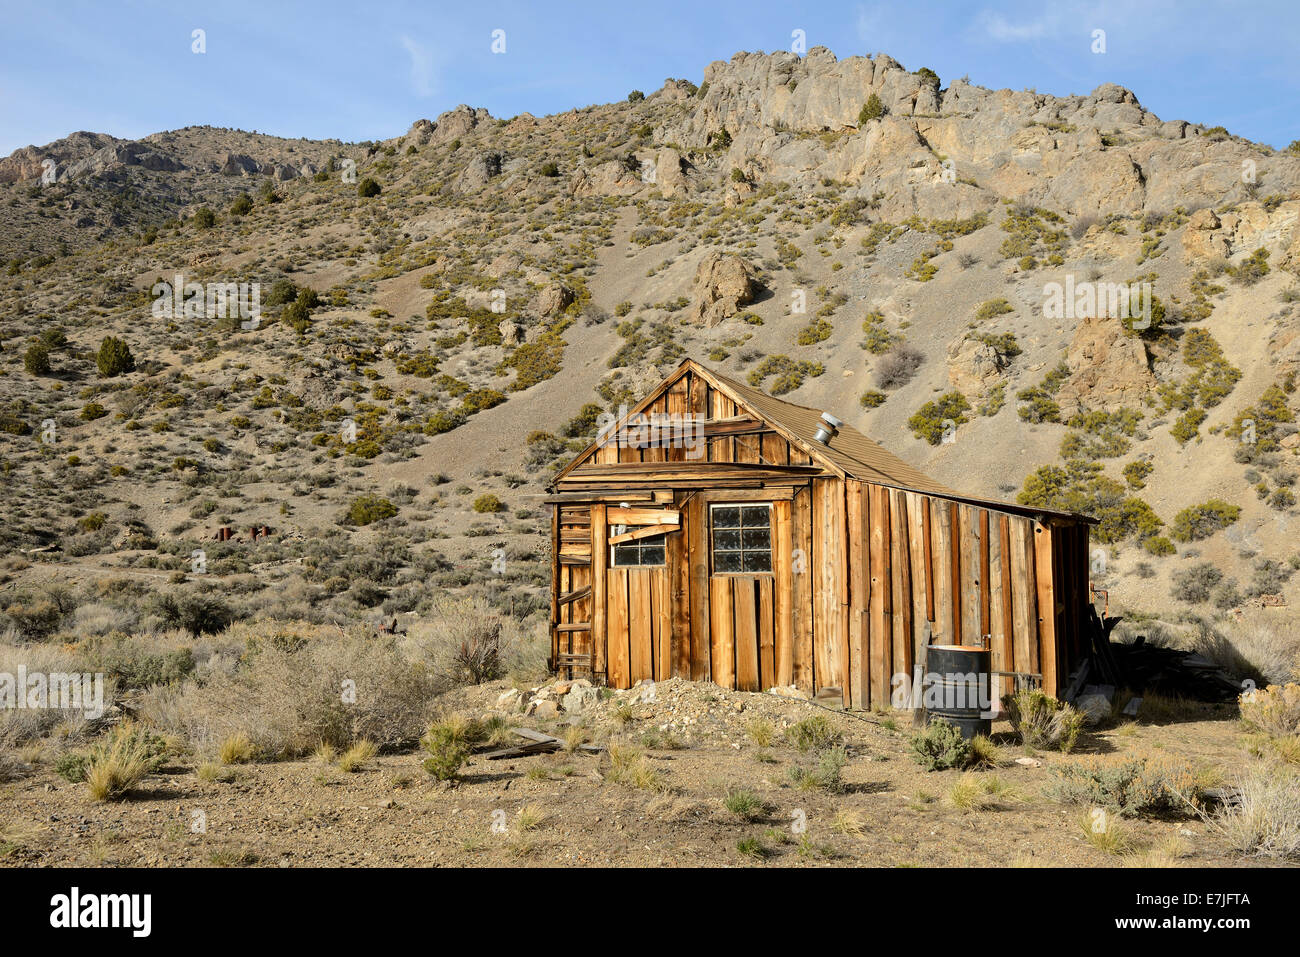 Stati Uniti d'America, Stati Uniti, America, Nevada, Tybo, città fantasma, storia, cabina, miniere, deserto outback, hut Foto Stock